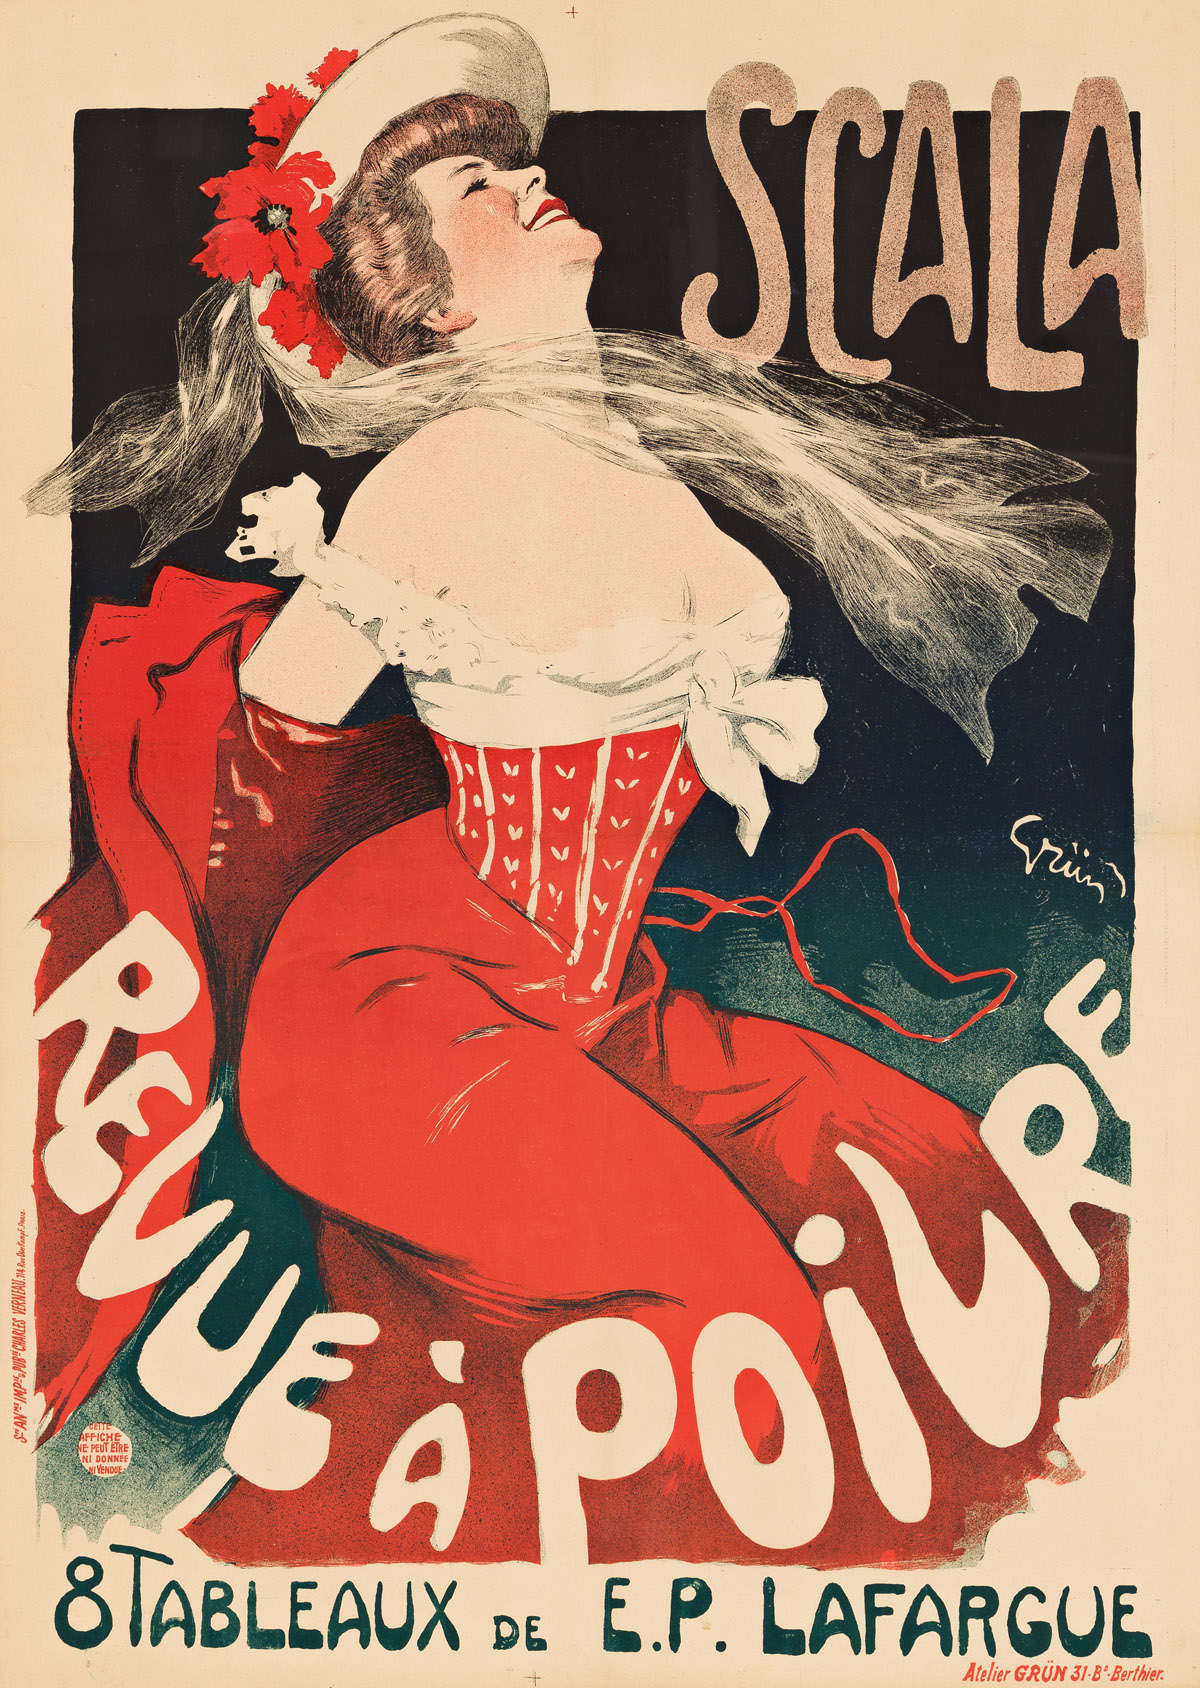 JULES-ALEXANDRE GRÜN (1868-1938).  SCALA / REVUE À POIVRE. 1903. 47¾x33¾ inches, 121¼x85¾ cm. Charles Verneau, Paris.